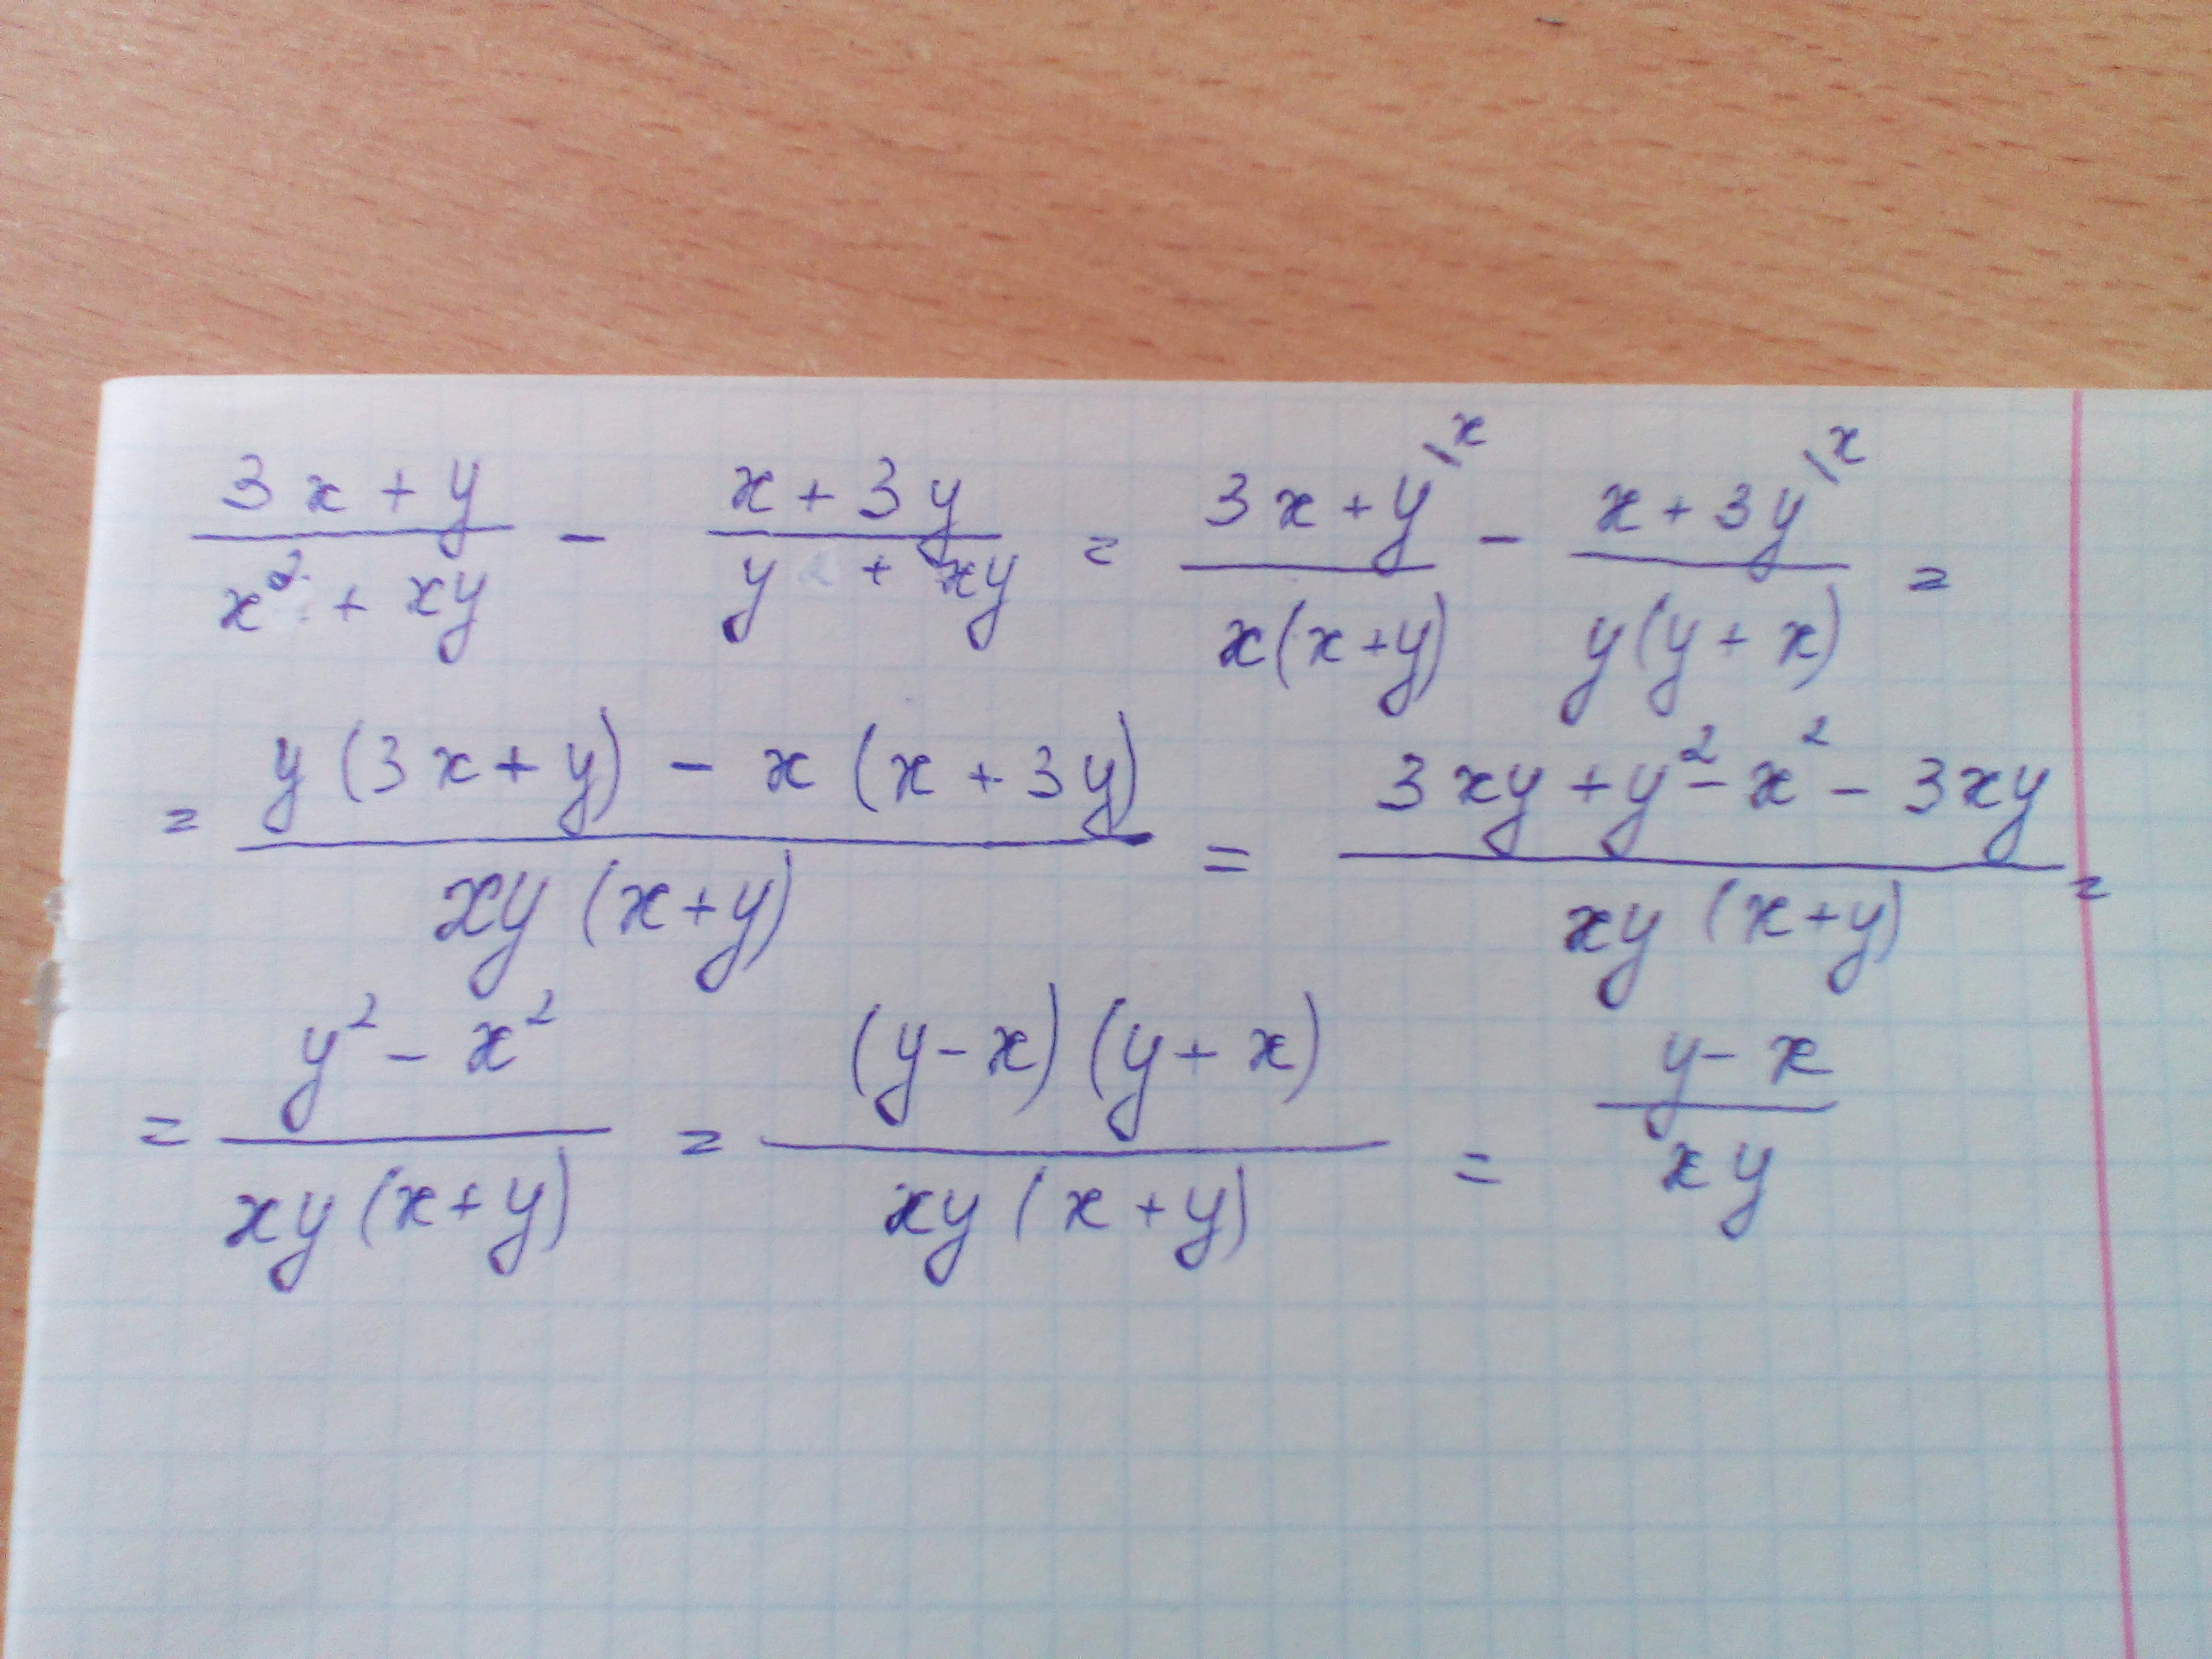 Упростите выражение х 3 y 2. X 2 +Y 2 =2x+2y+XY. Упростить выражение x^2-y^2/x^2-2xy+y^2. 3x+y/x2+XY-X+3y/y2+XY. 3x+y/x2+XY-X+3y/y2+XY упростите выражение.